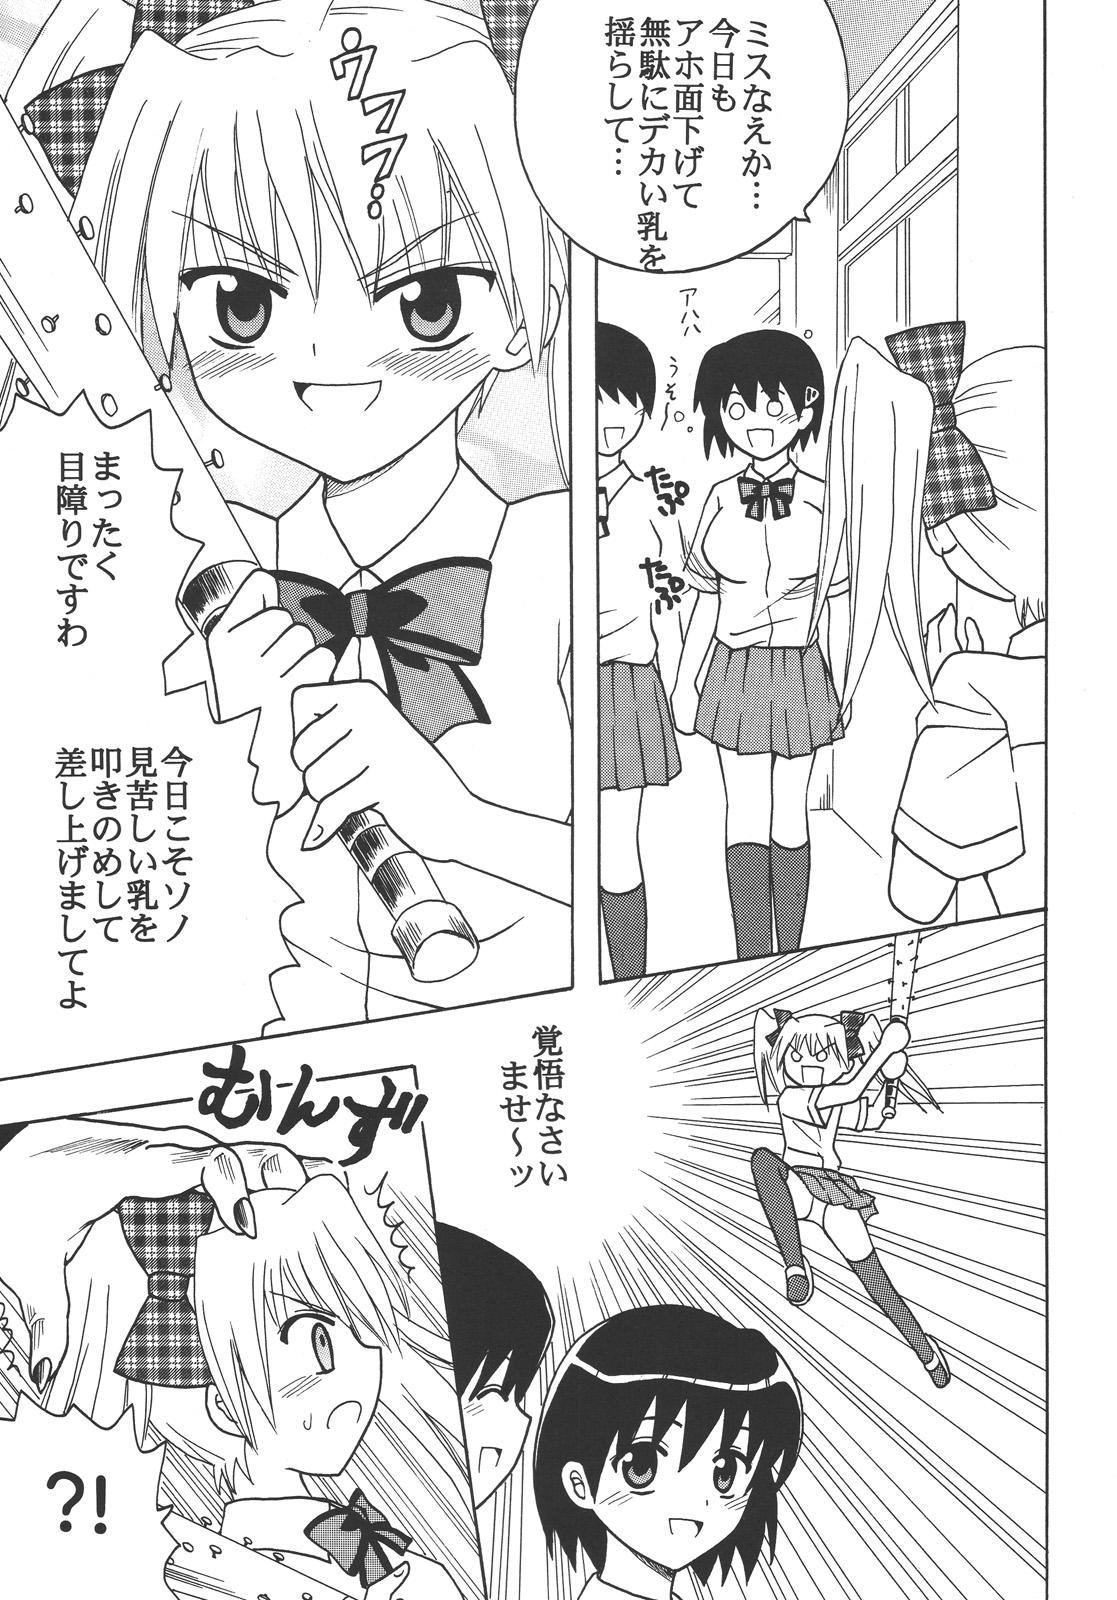 Hot Naked Girl Nakadashi Maid no Hinkaku 3 - Kamen no maid guy Kinky - Page 4